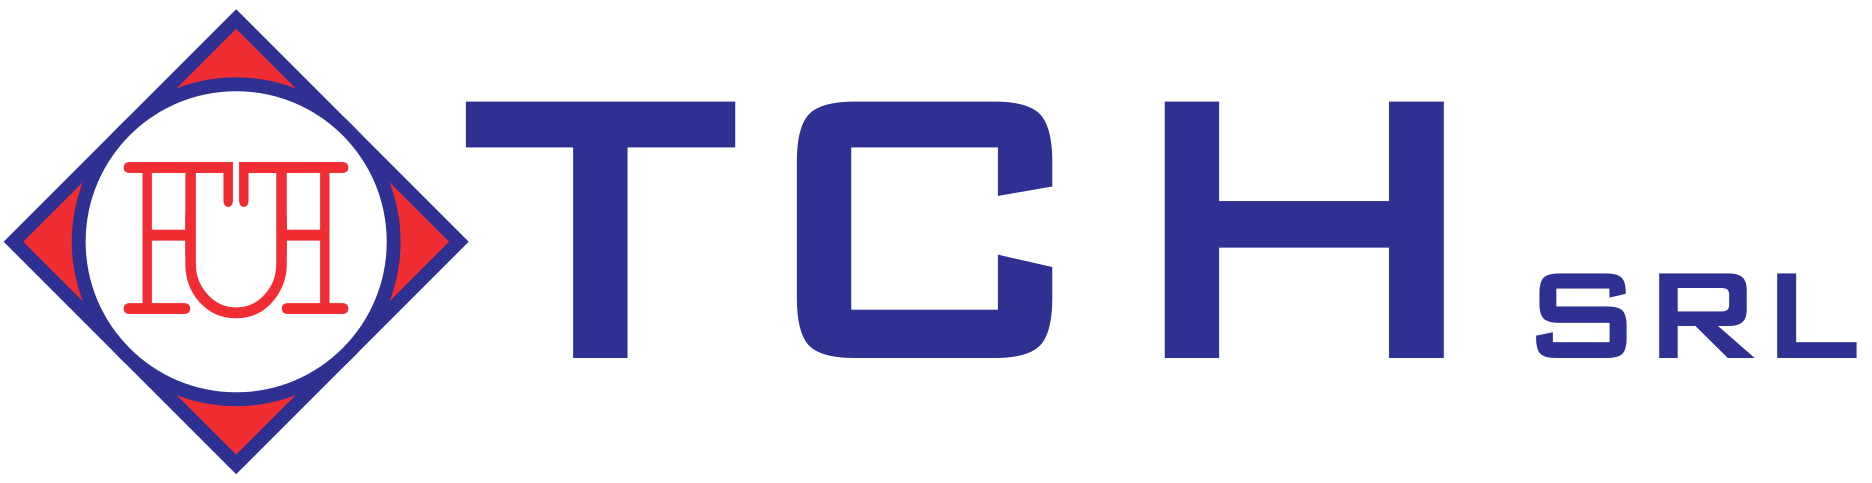 Logo TCH srl